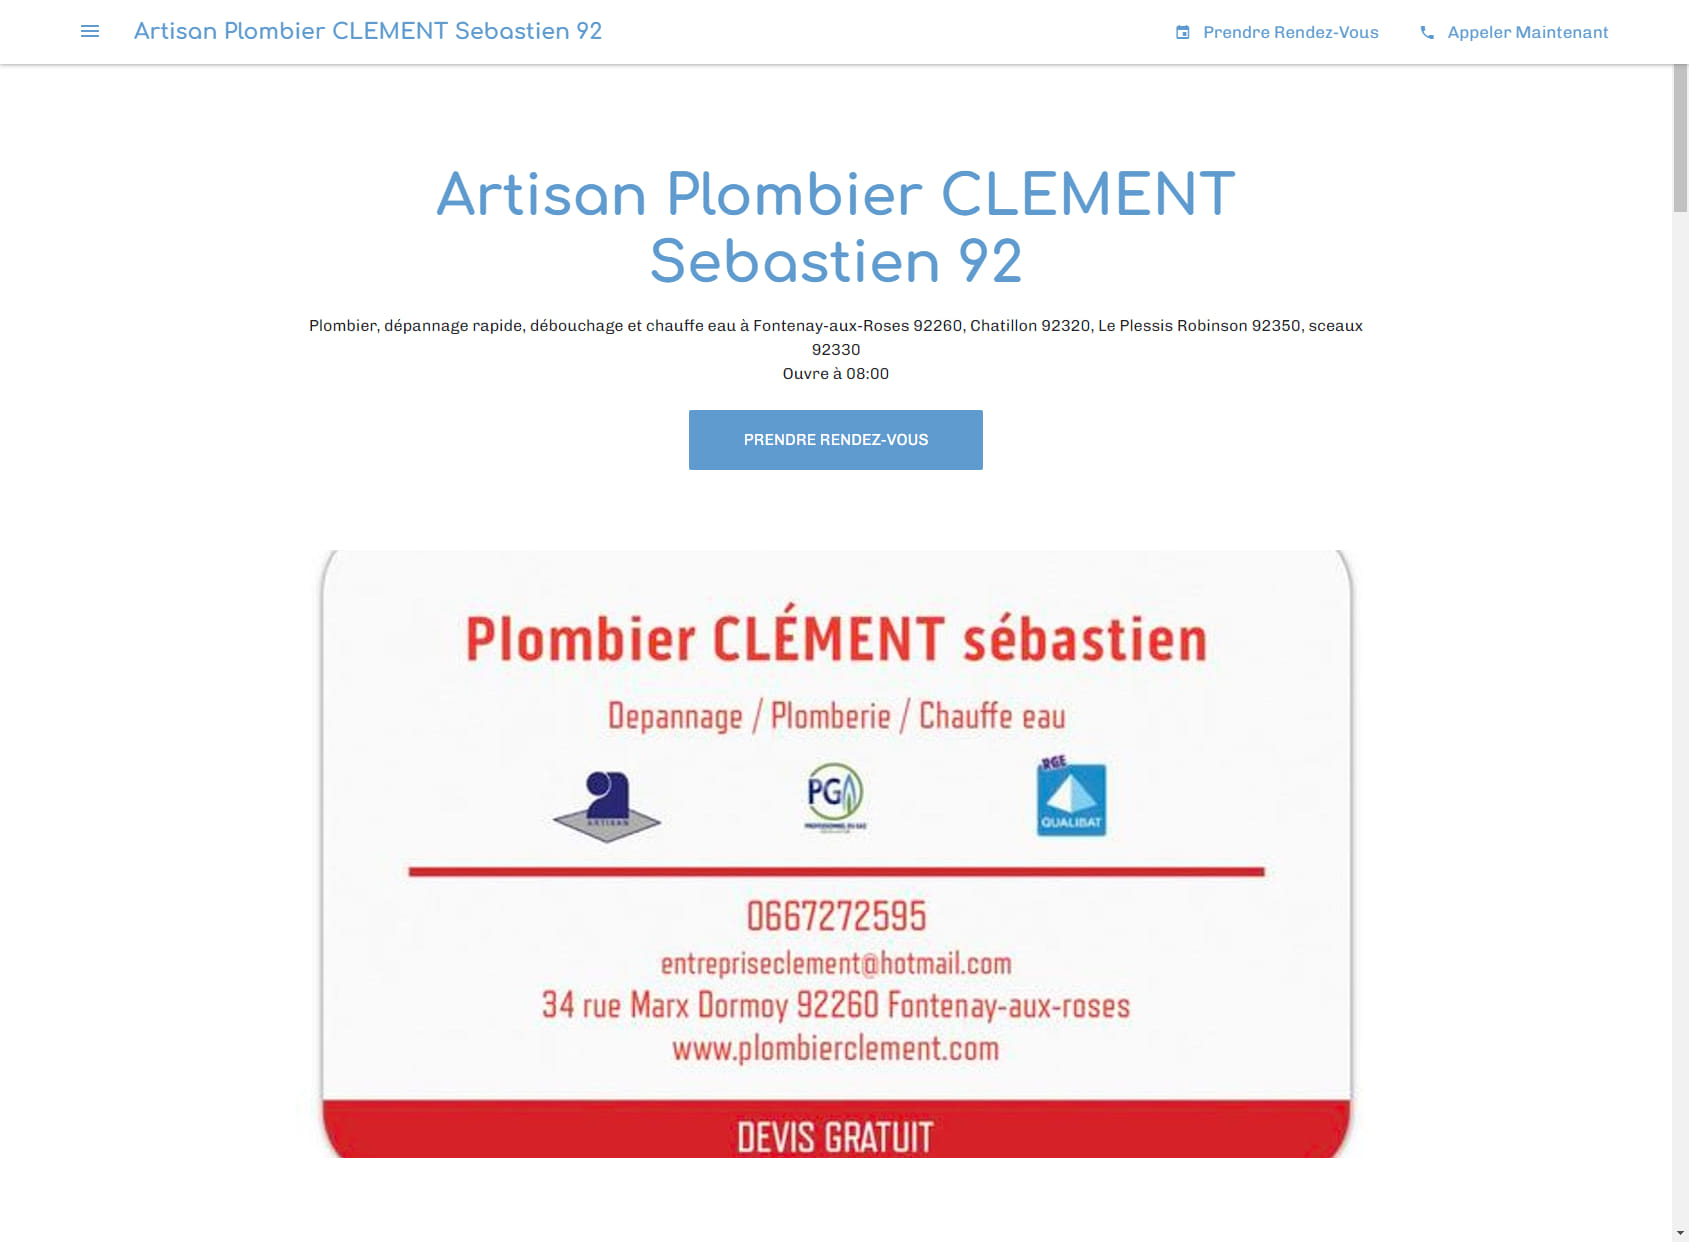 Artisan Plombier CLEMENT Sebastien 92